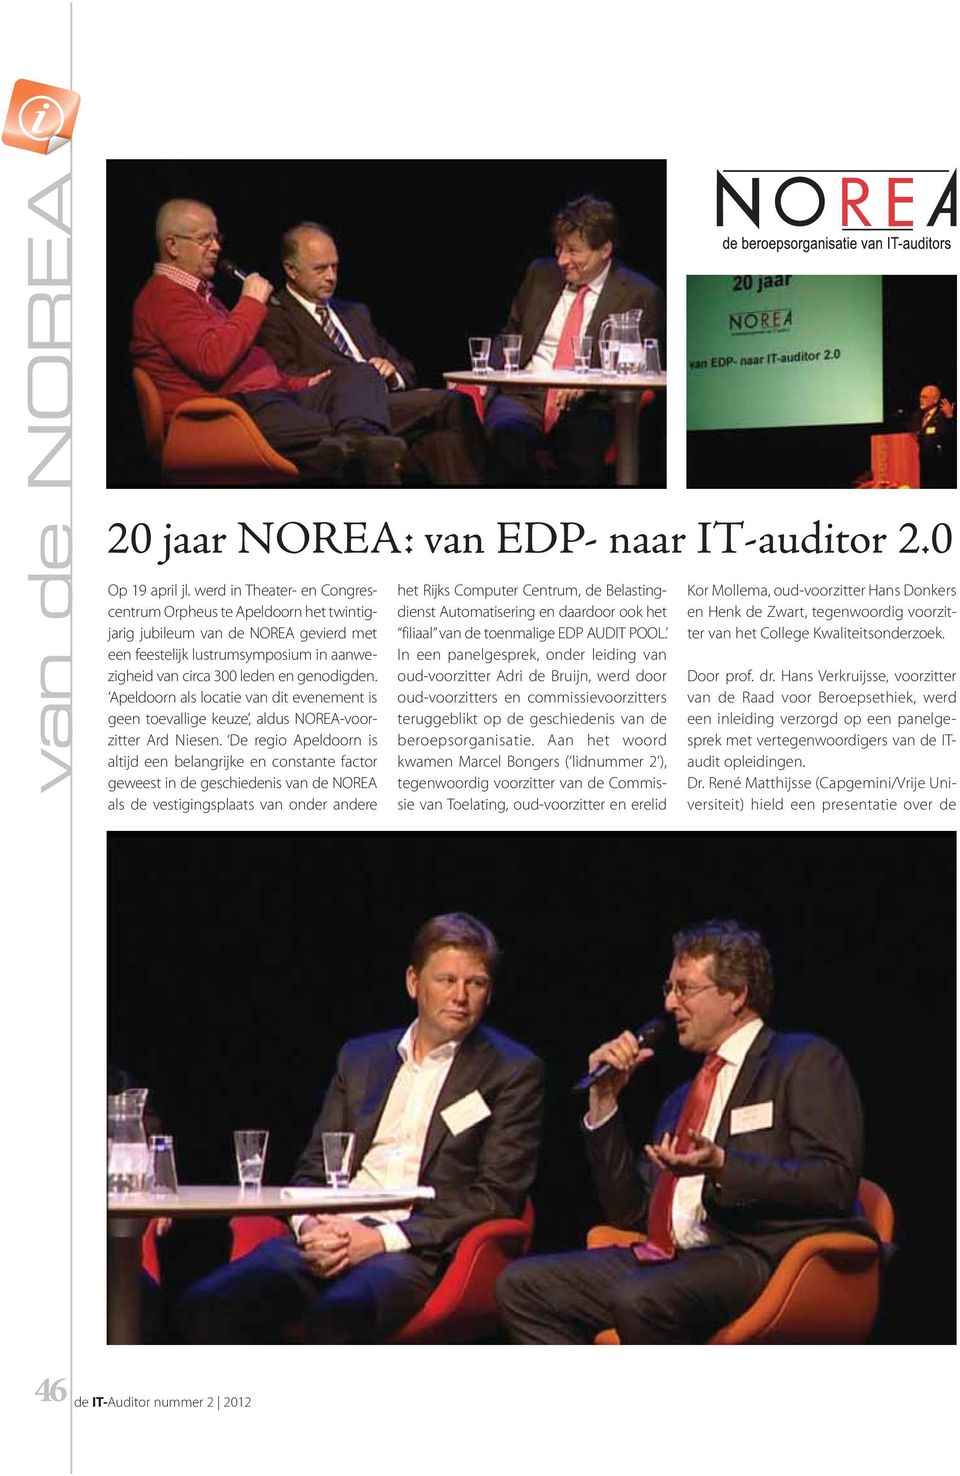 Apeldoorn als locatie van dit evenement is geen toevallige keuze, aldus NOREA-voorzitter Ard Niesen.